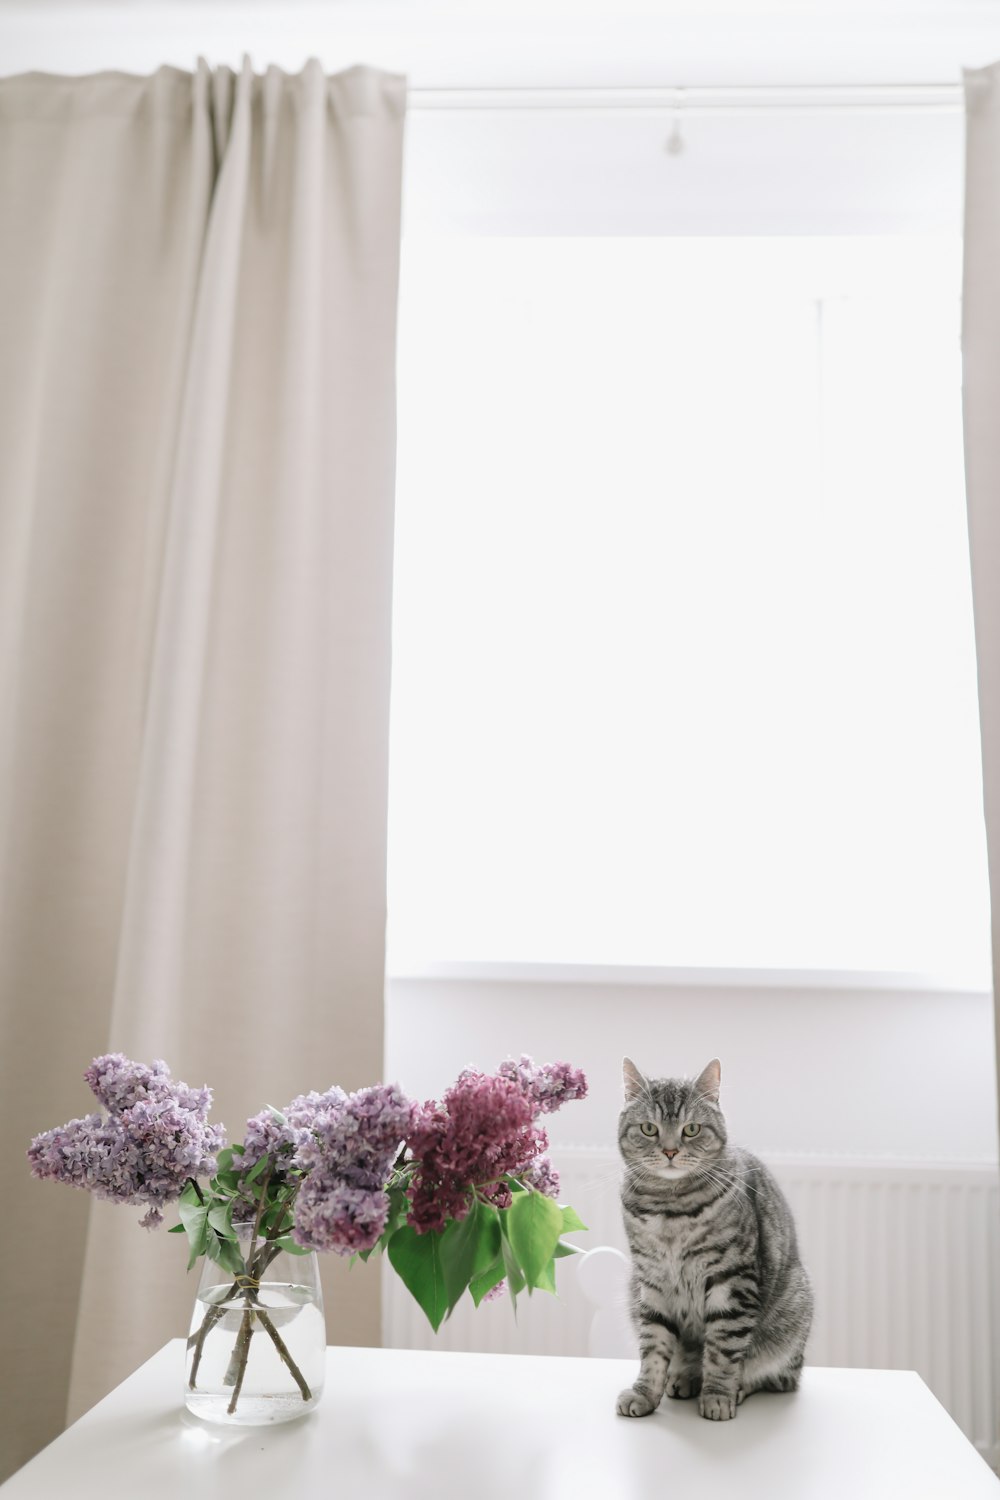 um gato sentado ao lado de um vaso de flores